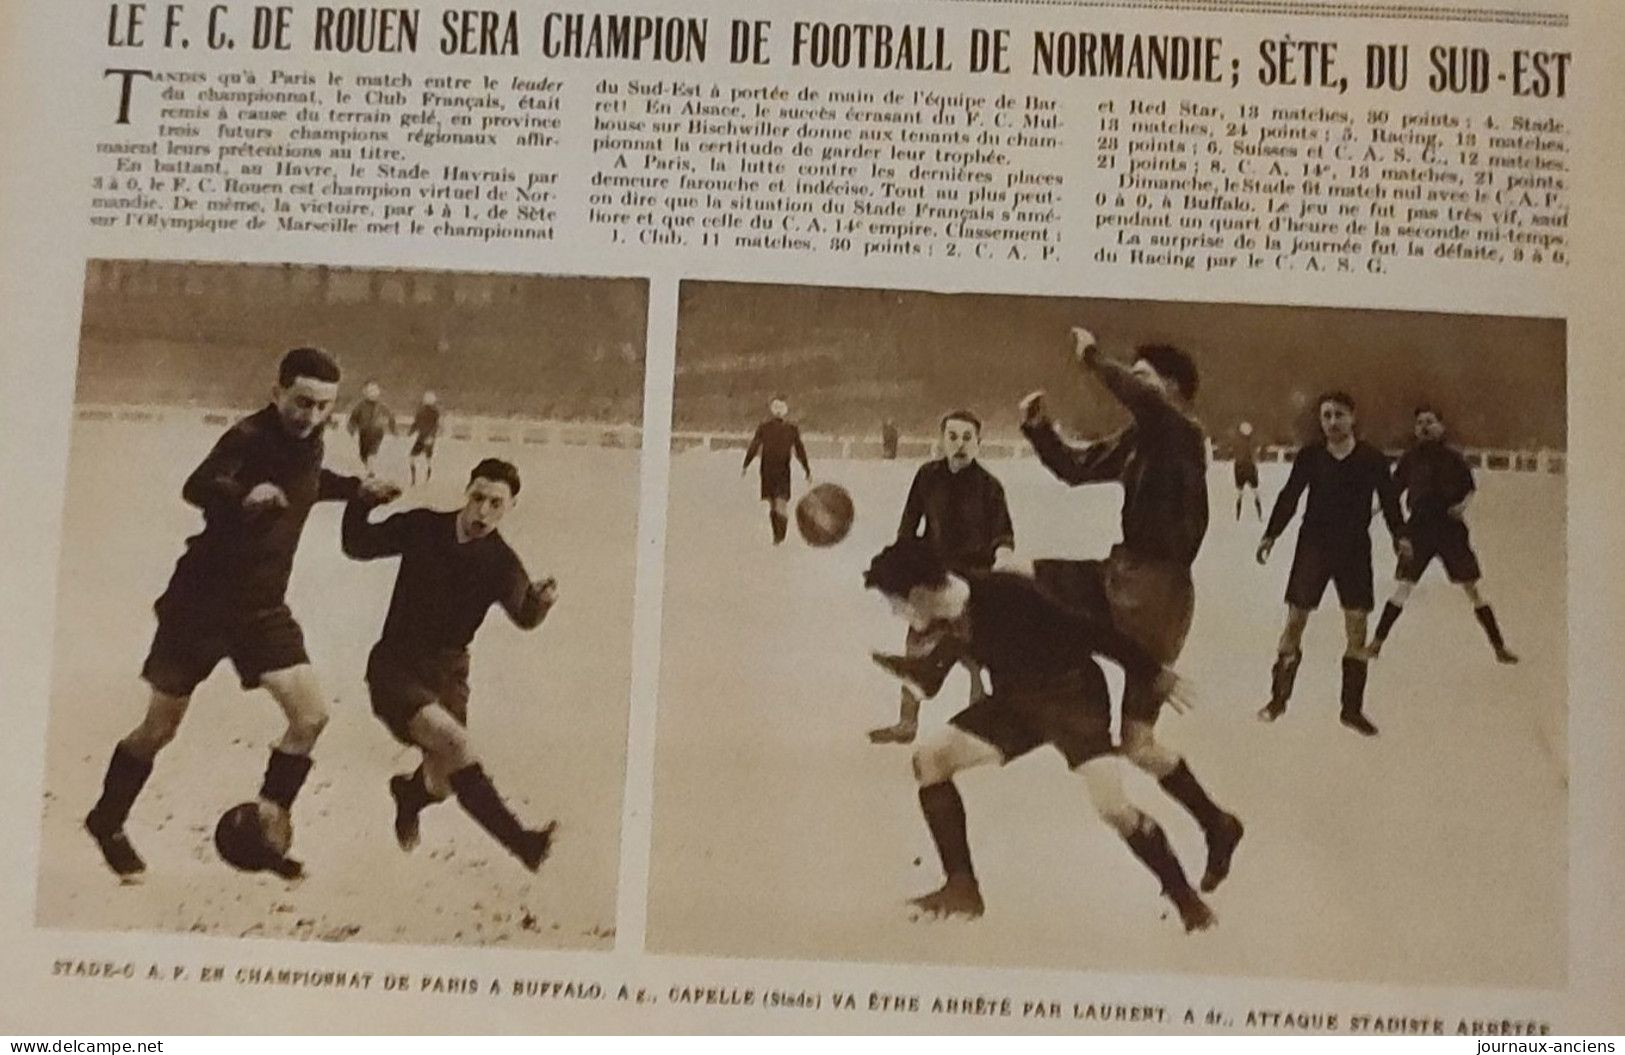 1928 FOOTBALL - SETE CHAMPION DU SUD EST - ROUEN CHAMPION DE NORMANDIE - LE MIROIR DES SPORTS - Libros